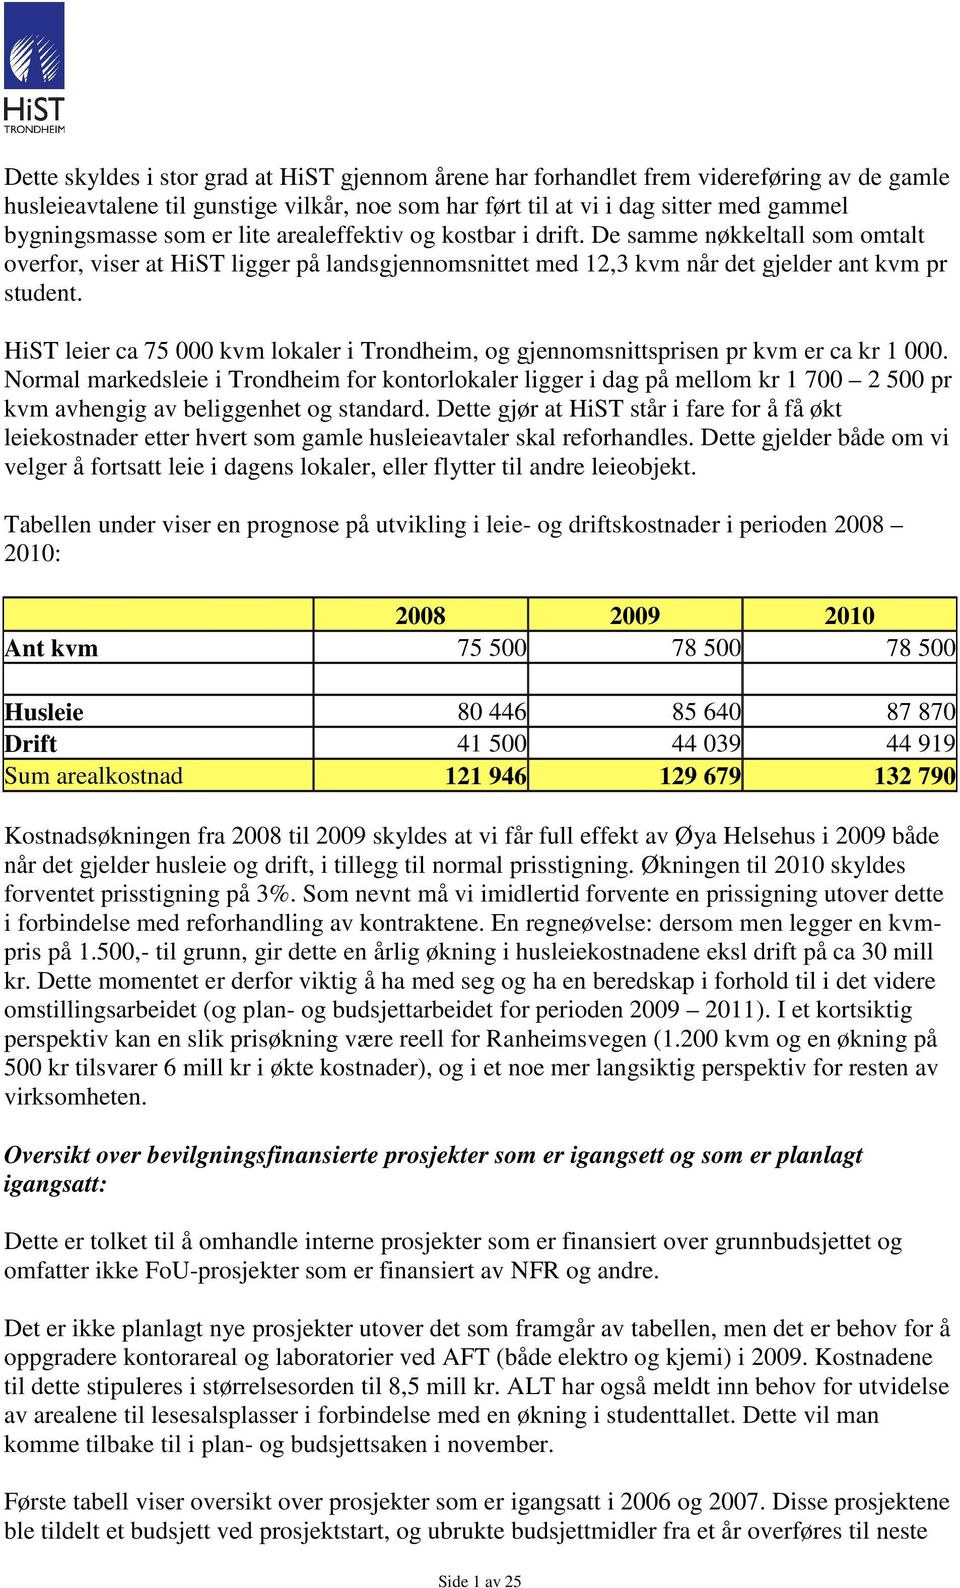 HiST leier ca 75 000 kvm lokaler i Trondheim, og gjennomsnittsprisen pr kvm er ca kr 1 000.